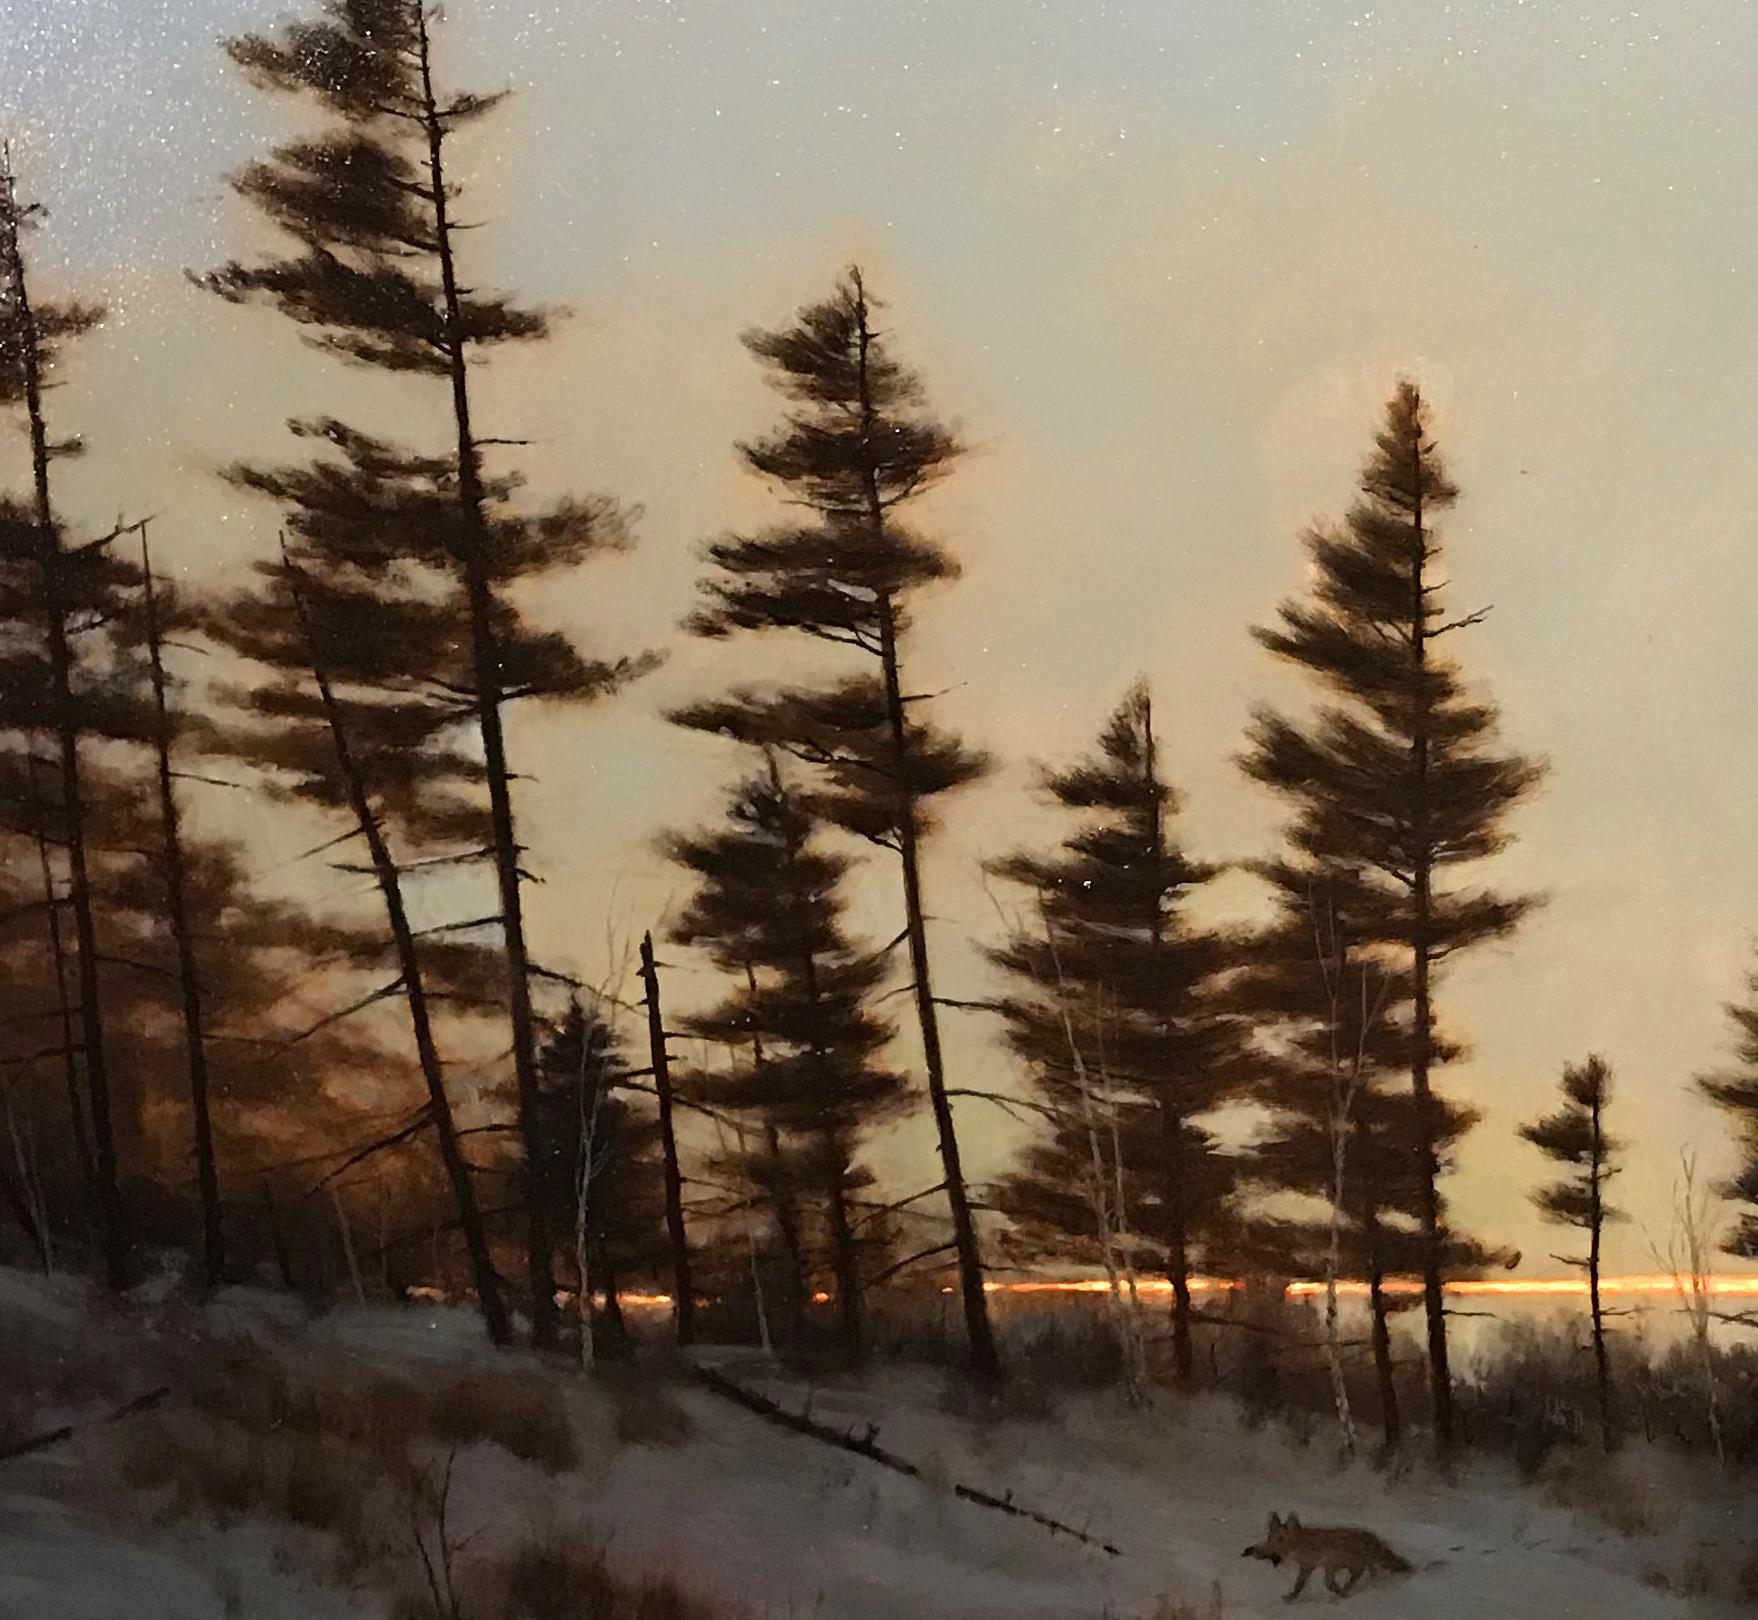 Chocorua à Twilight - Réalisme américain Painting par William R. Davis